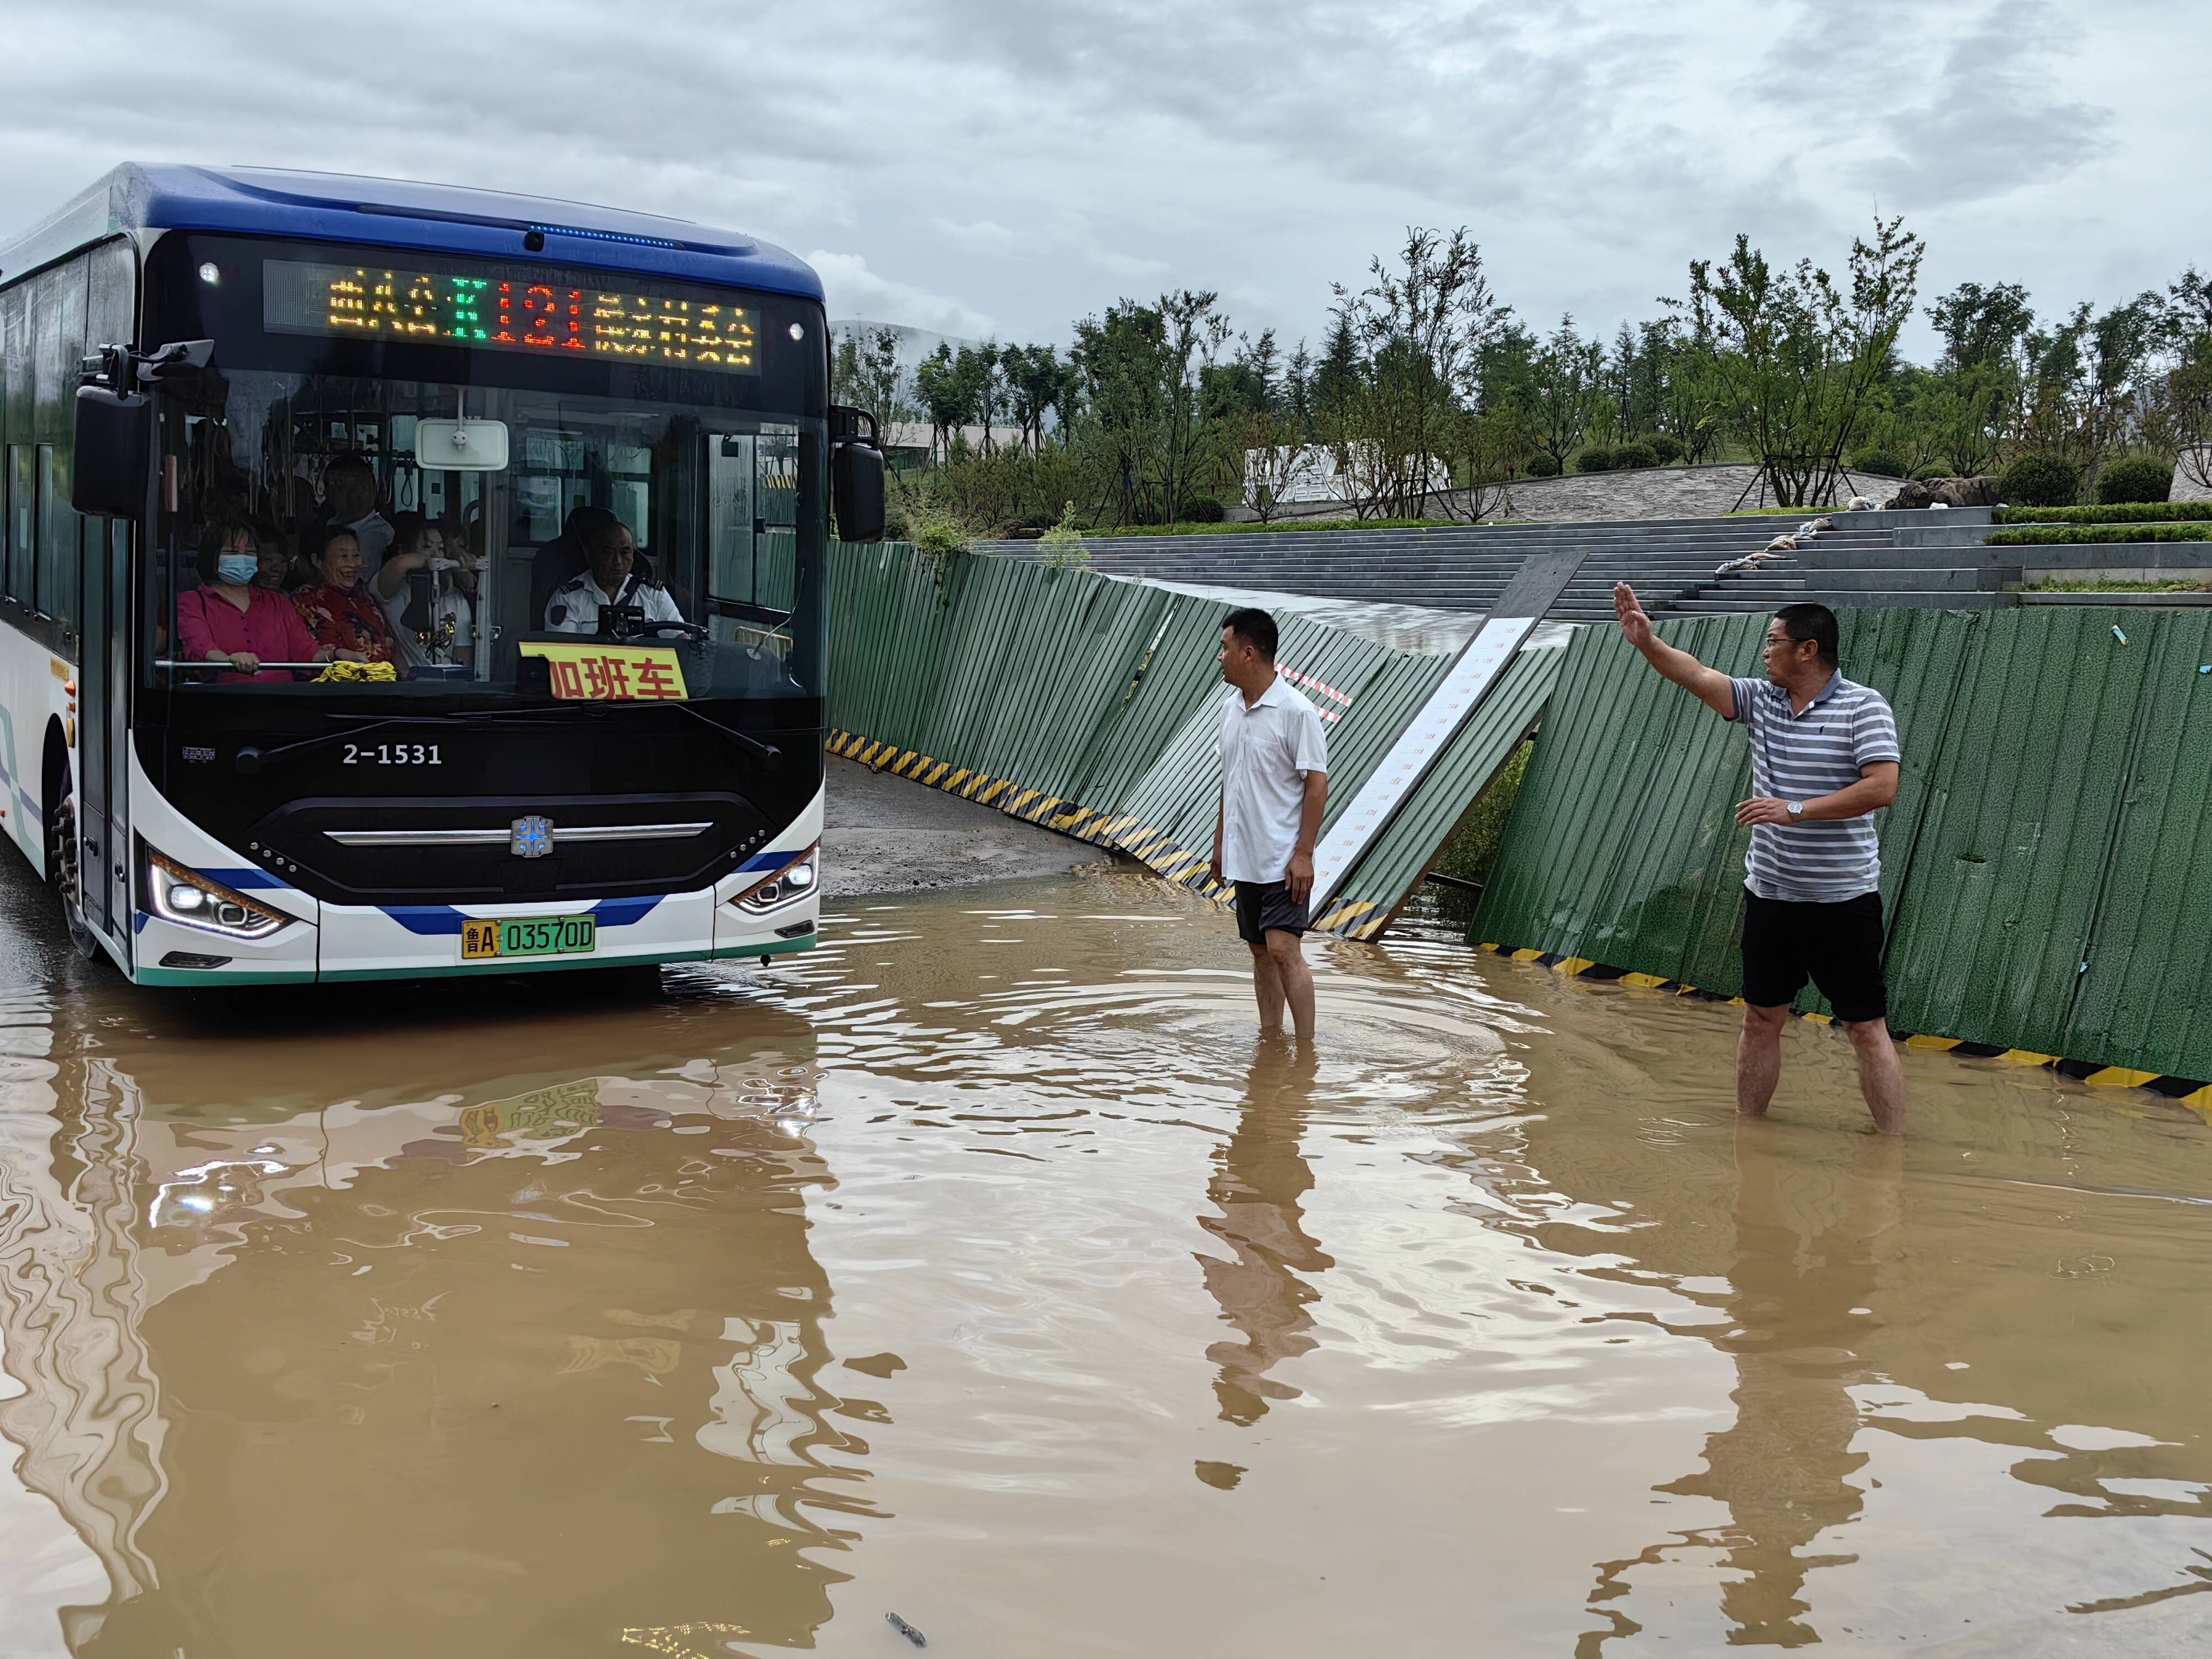 道路积水影响市民出行 济南公交车队购抽水泵排水保障运行